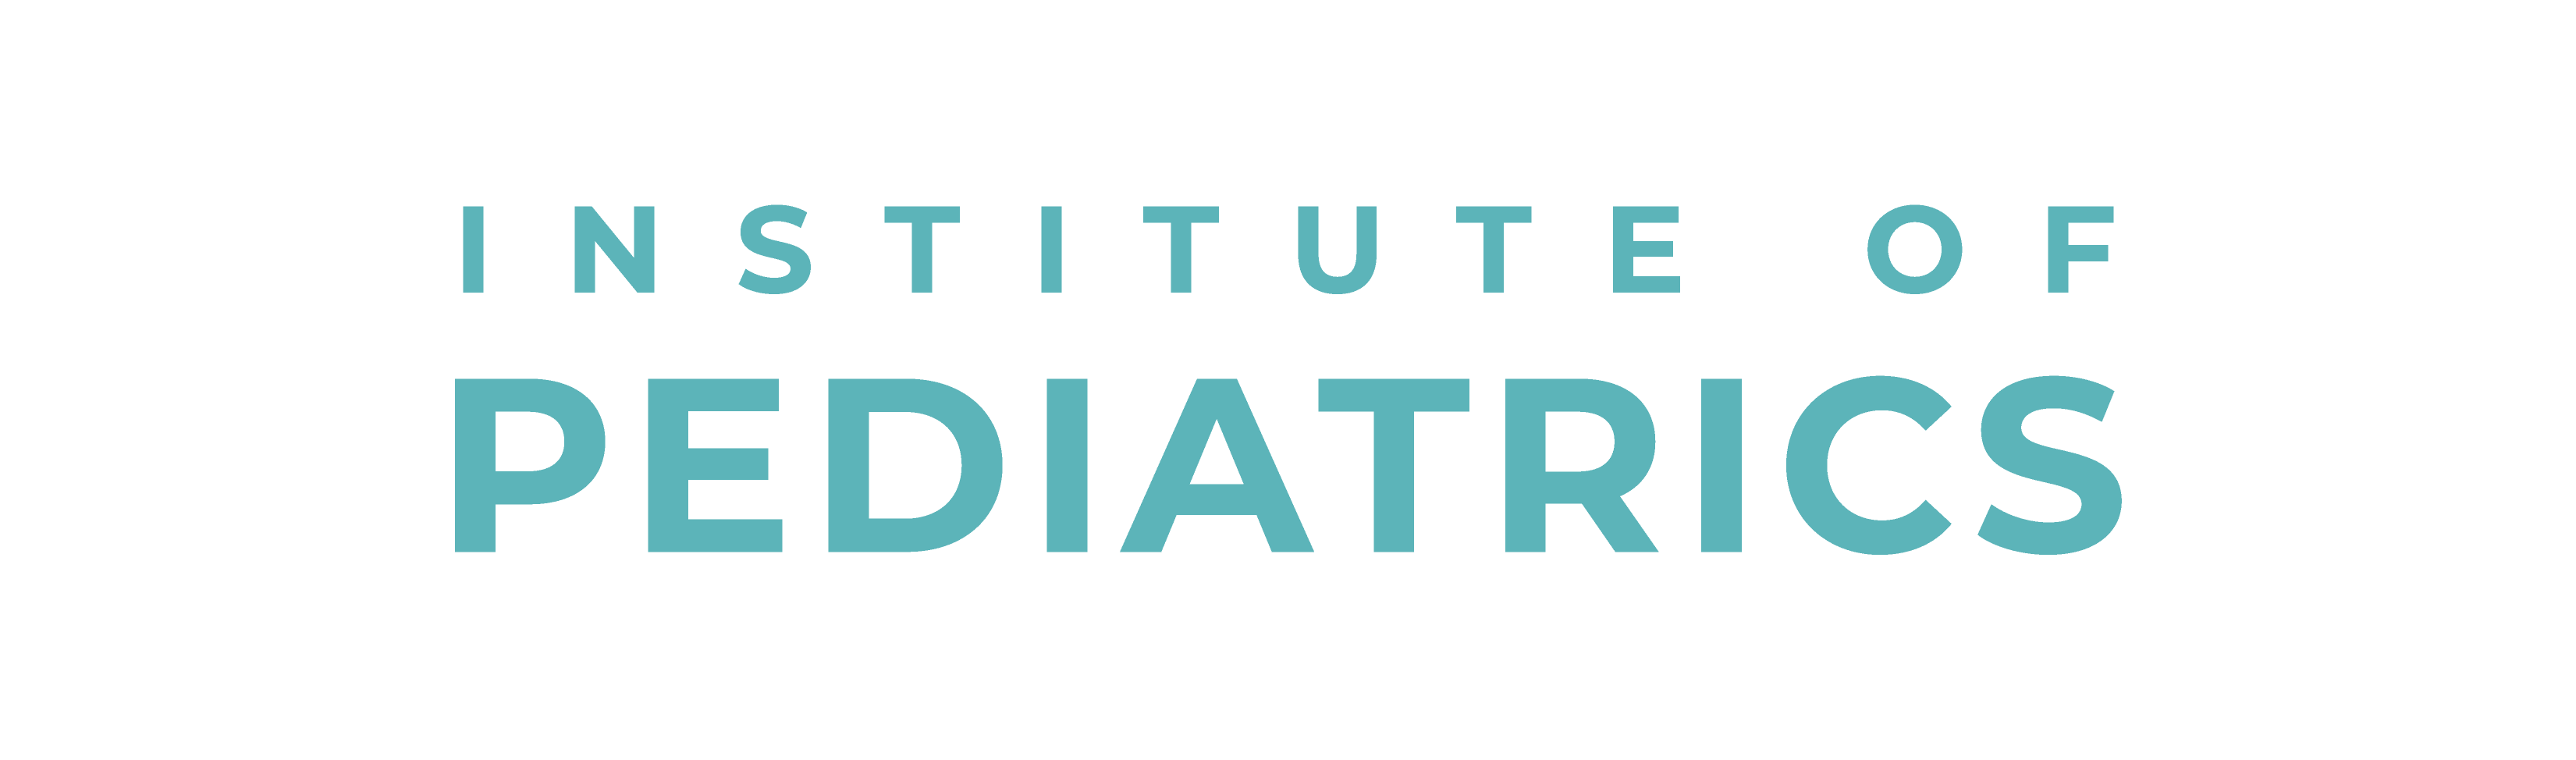 tmc institute of pediatrics logo